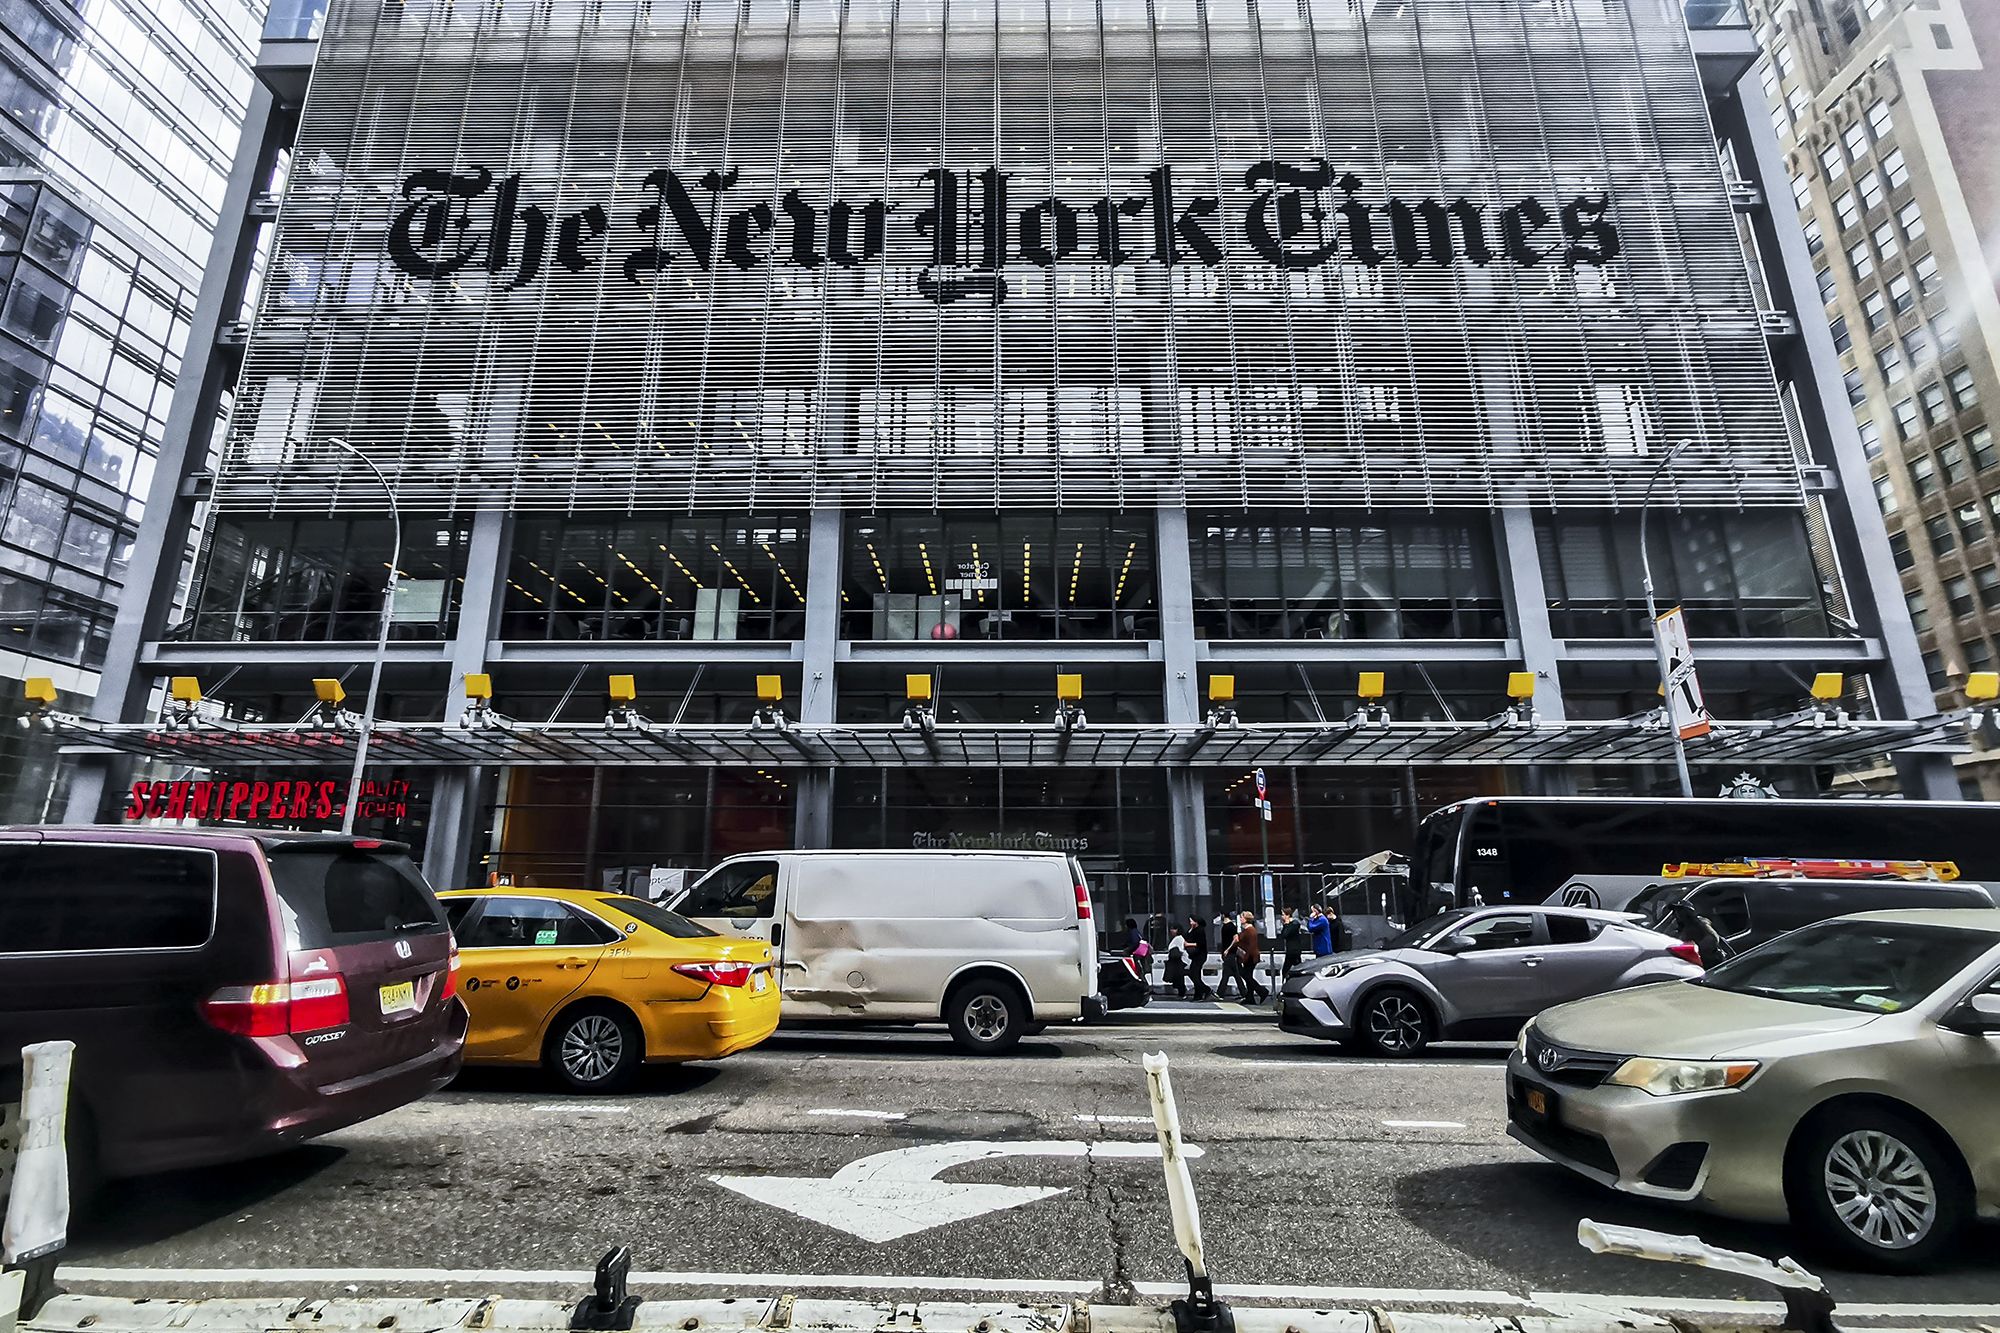 As implicações da compra do The Athletic pelo New York Times